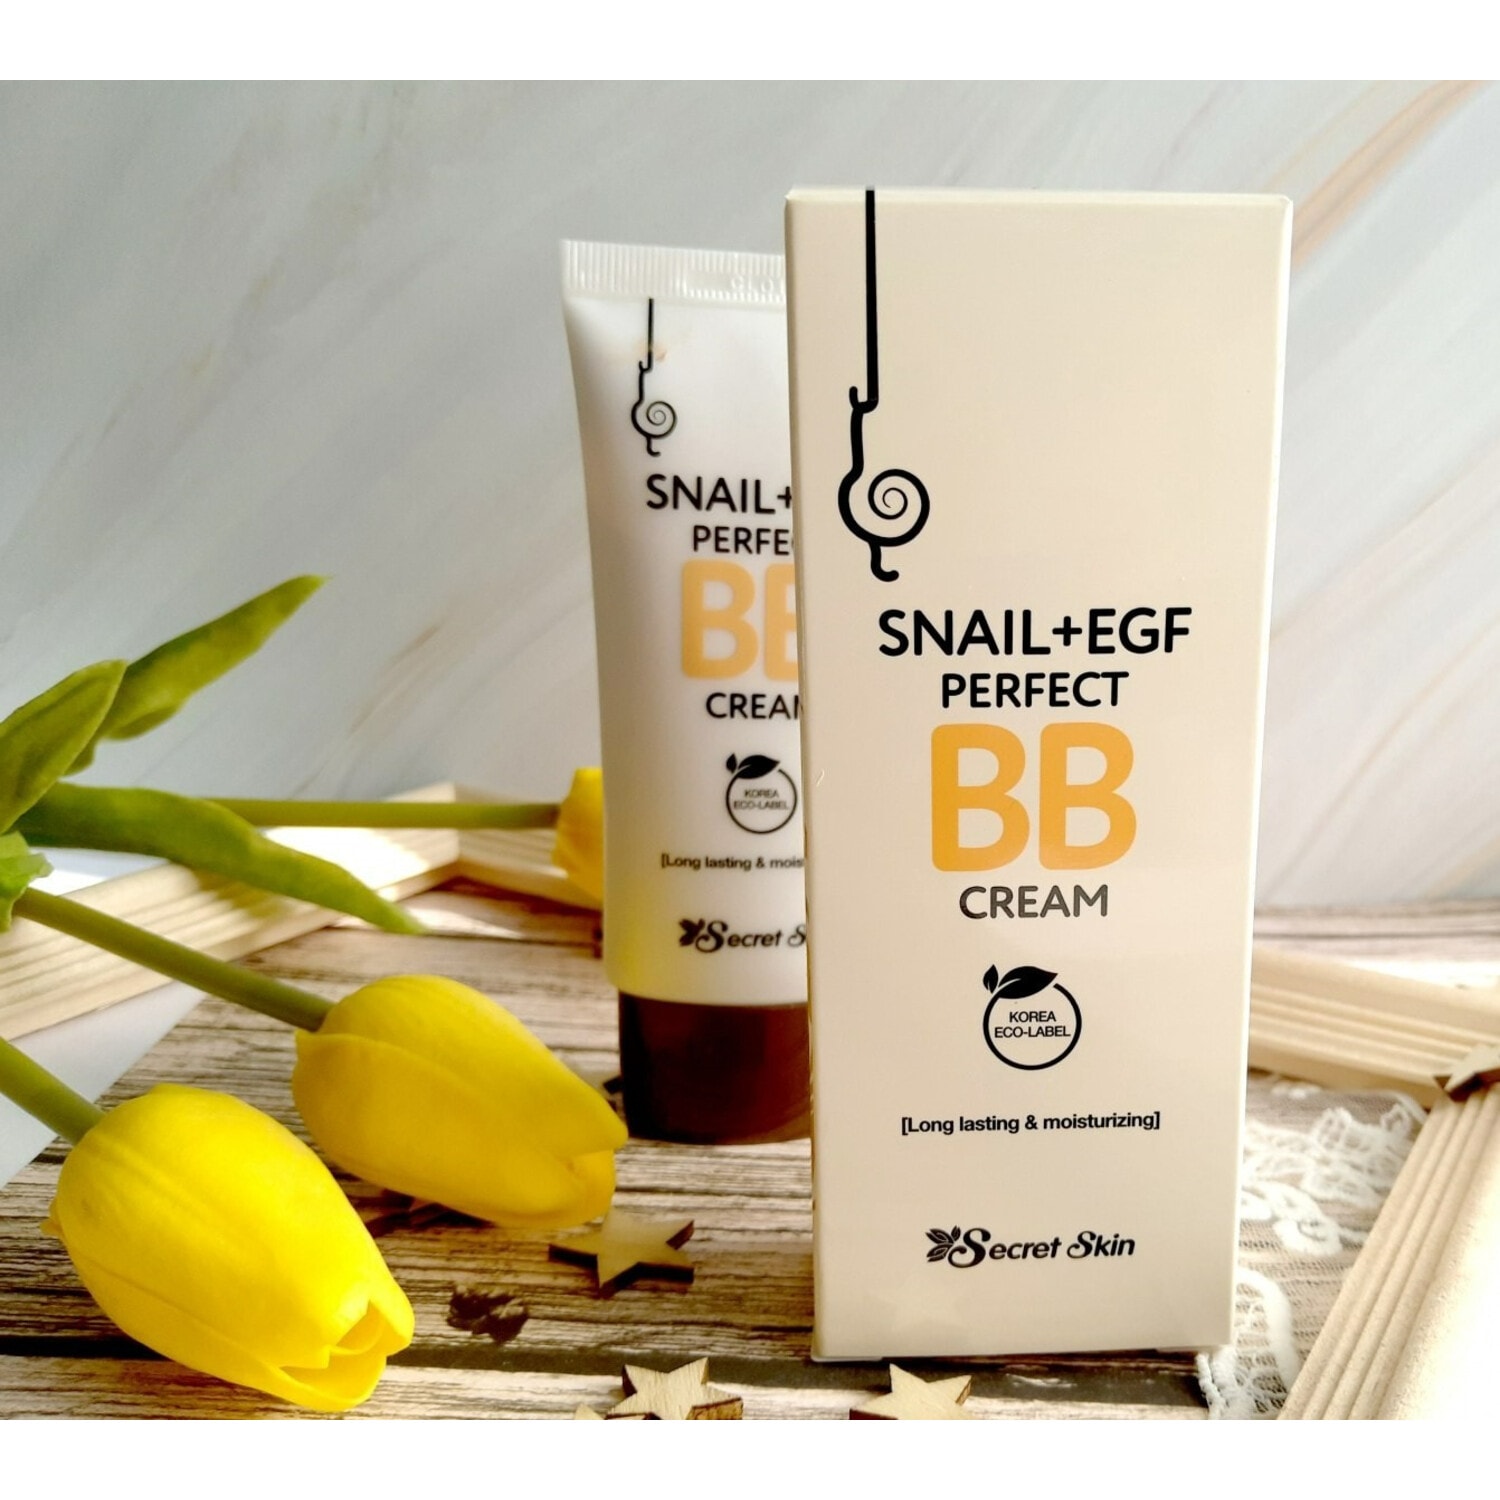 Secret Skin Snail + Egf Perfect Bb Cream, ББ Крем с экстрактом улитки, 50мл. / 515379 (3Т)